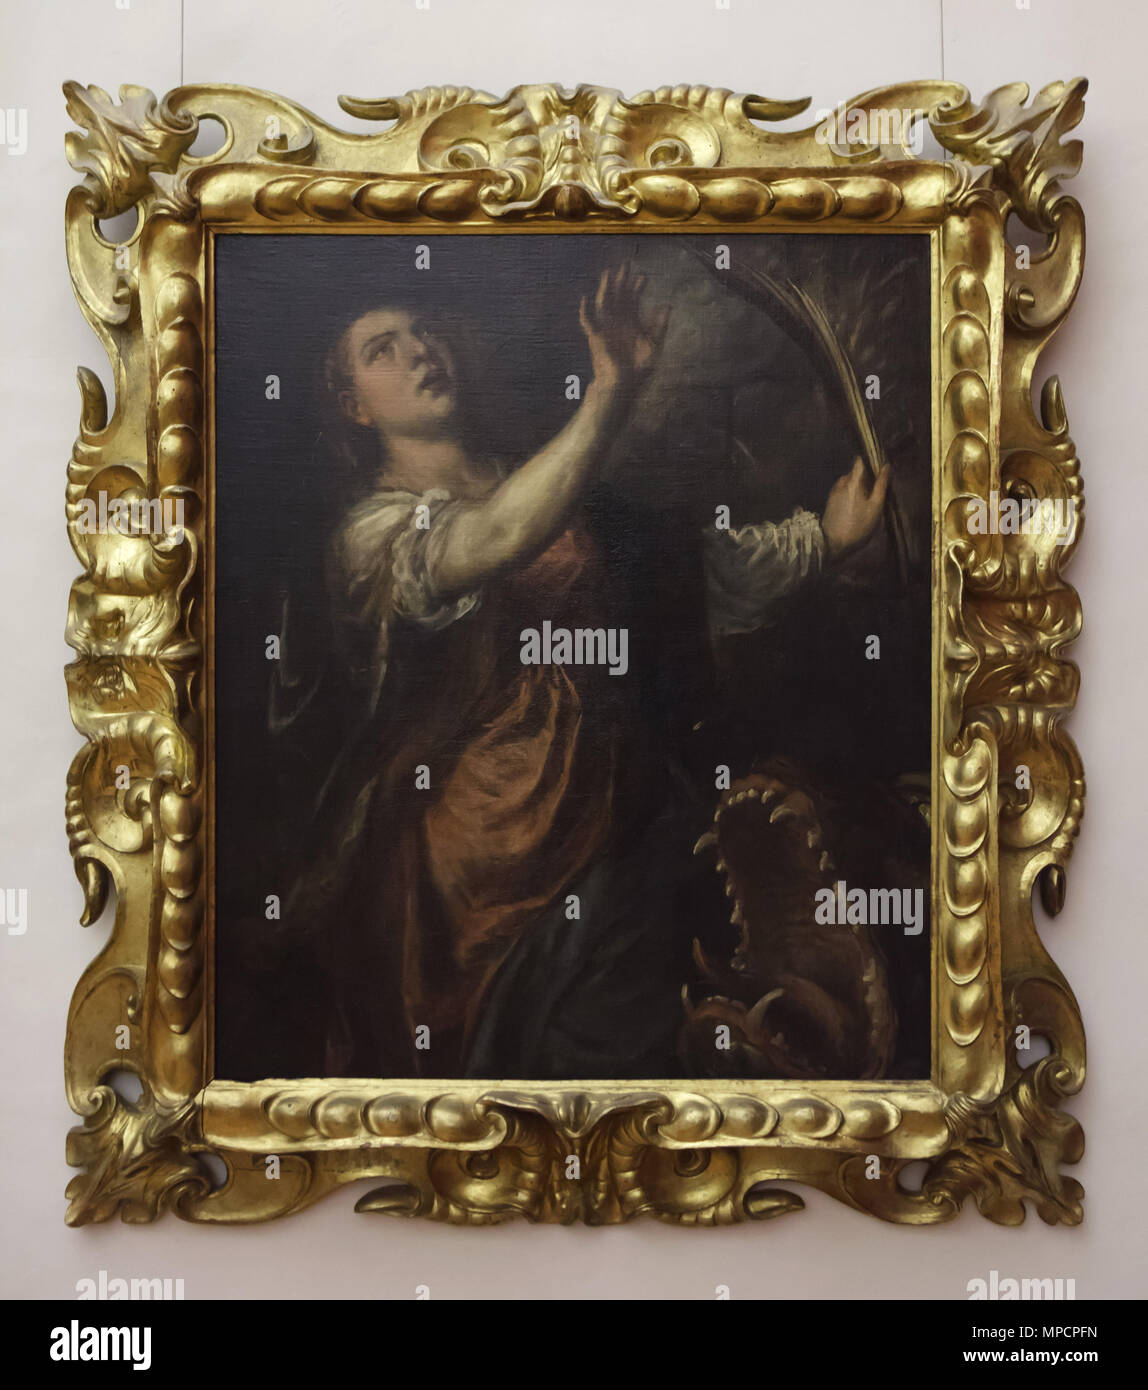 'Saint peinture Margaret" (1565-1570) par le peintre de la Renaissance italienne Tiziano Vecellio également connu sous le nom de Titien exposé dans la galerie des Offices (Galleria degli Uffizi), à Florence, Toscane, Italie. Banque D'Images